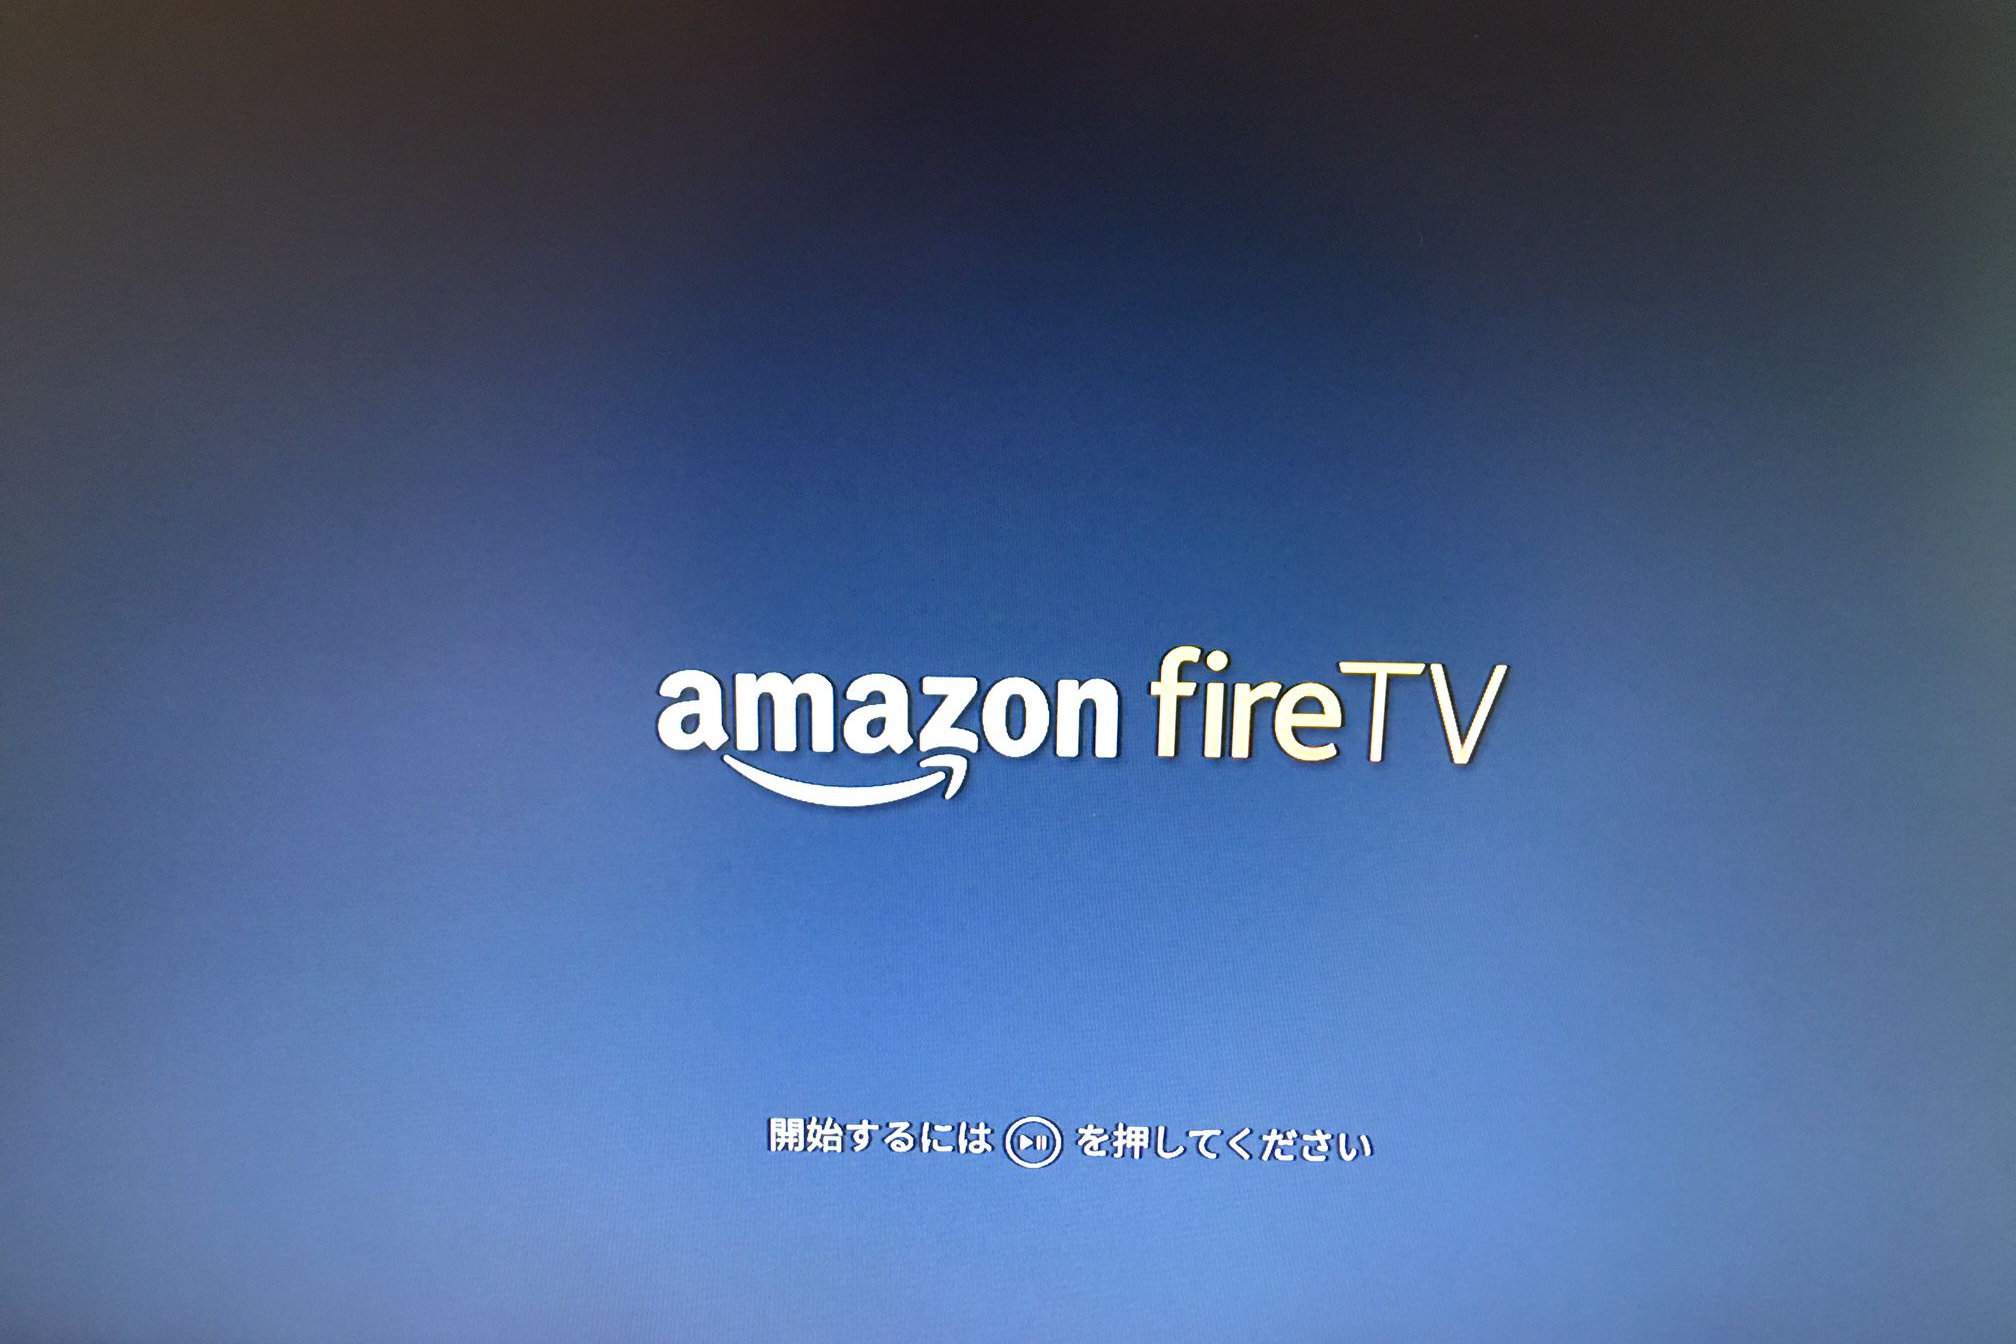 Obrázek televize s inicializací Amazon Fire TV.